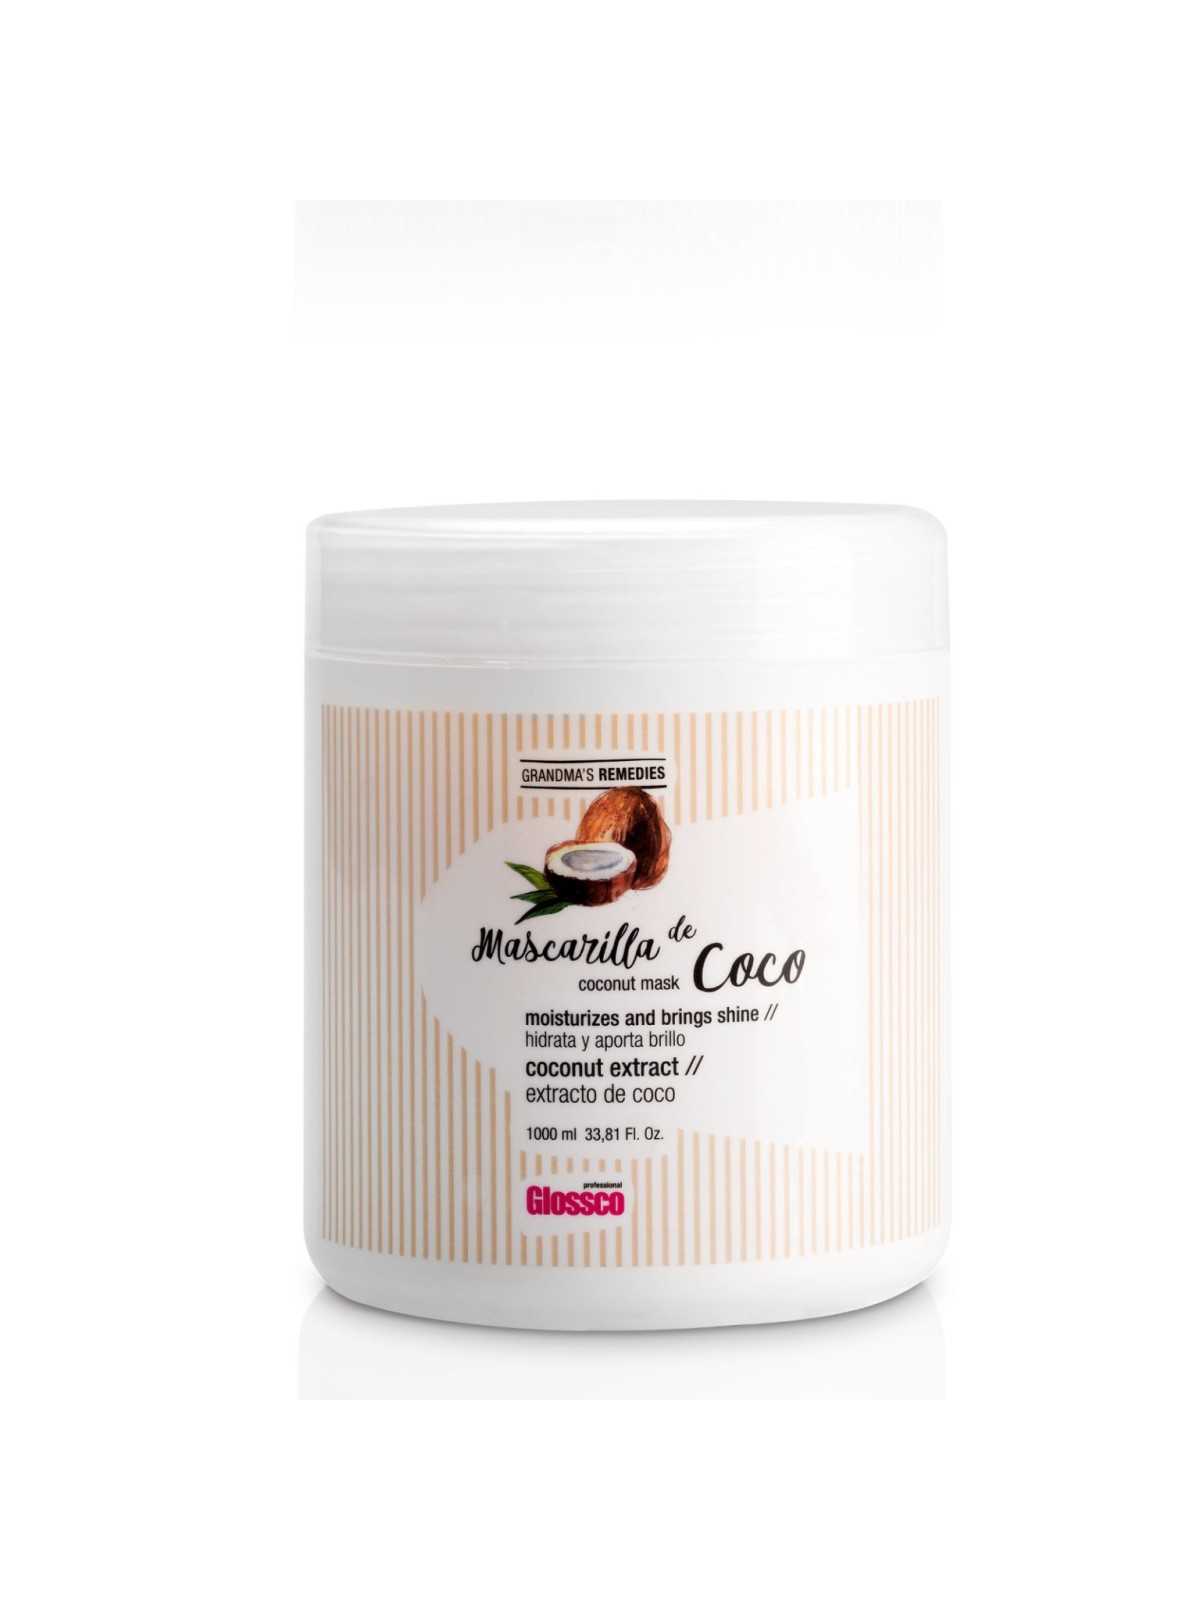 Comprar Glossco Mascarilla de Coco Grandma´s Remedies 1000ml en Inicio por sólo 12,77 € o un precio específico de 12,77 € en Thalie Care